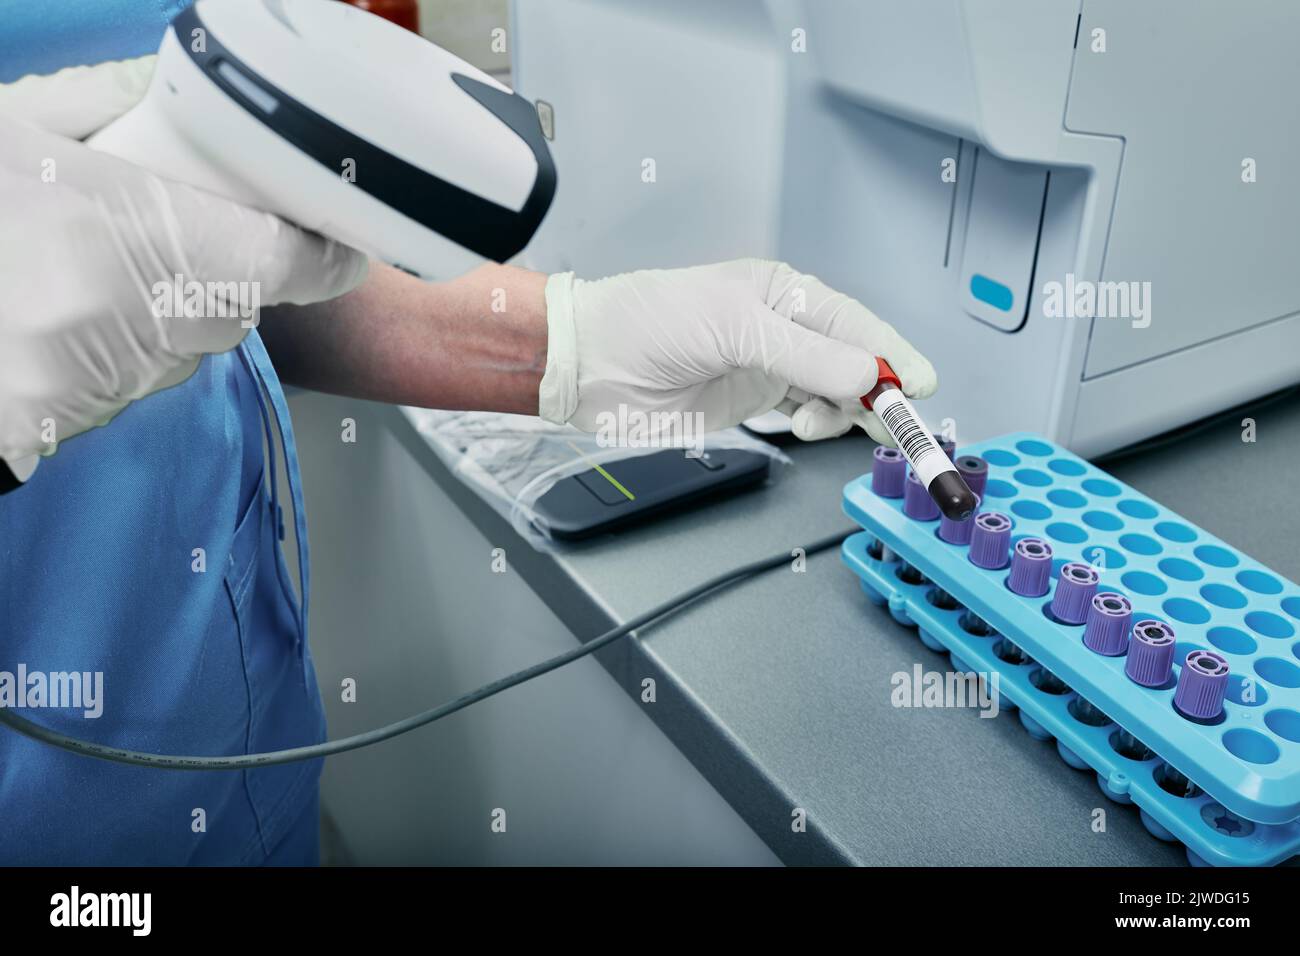 Labortechniker scannen den Barcode des Reagenzröhrchens mit Blut. Barcode-Etikett auf dem Reagenzglas zur Verfolgung von Blutproben Stockfoto